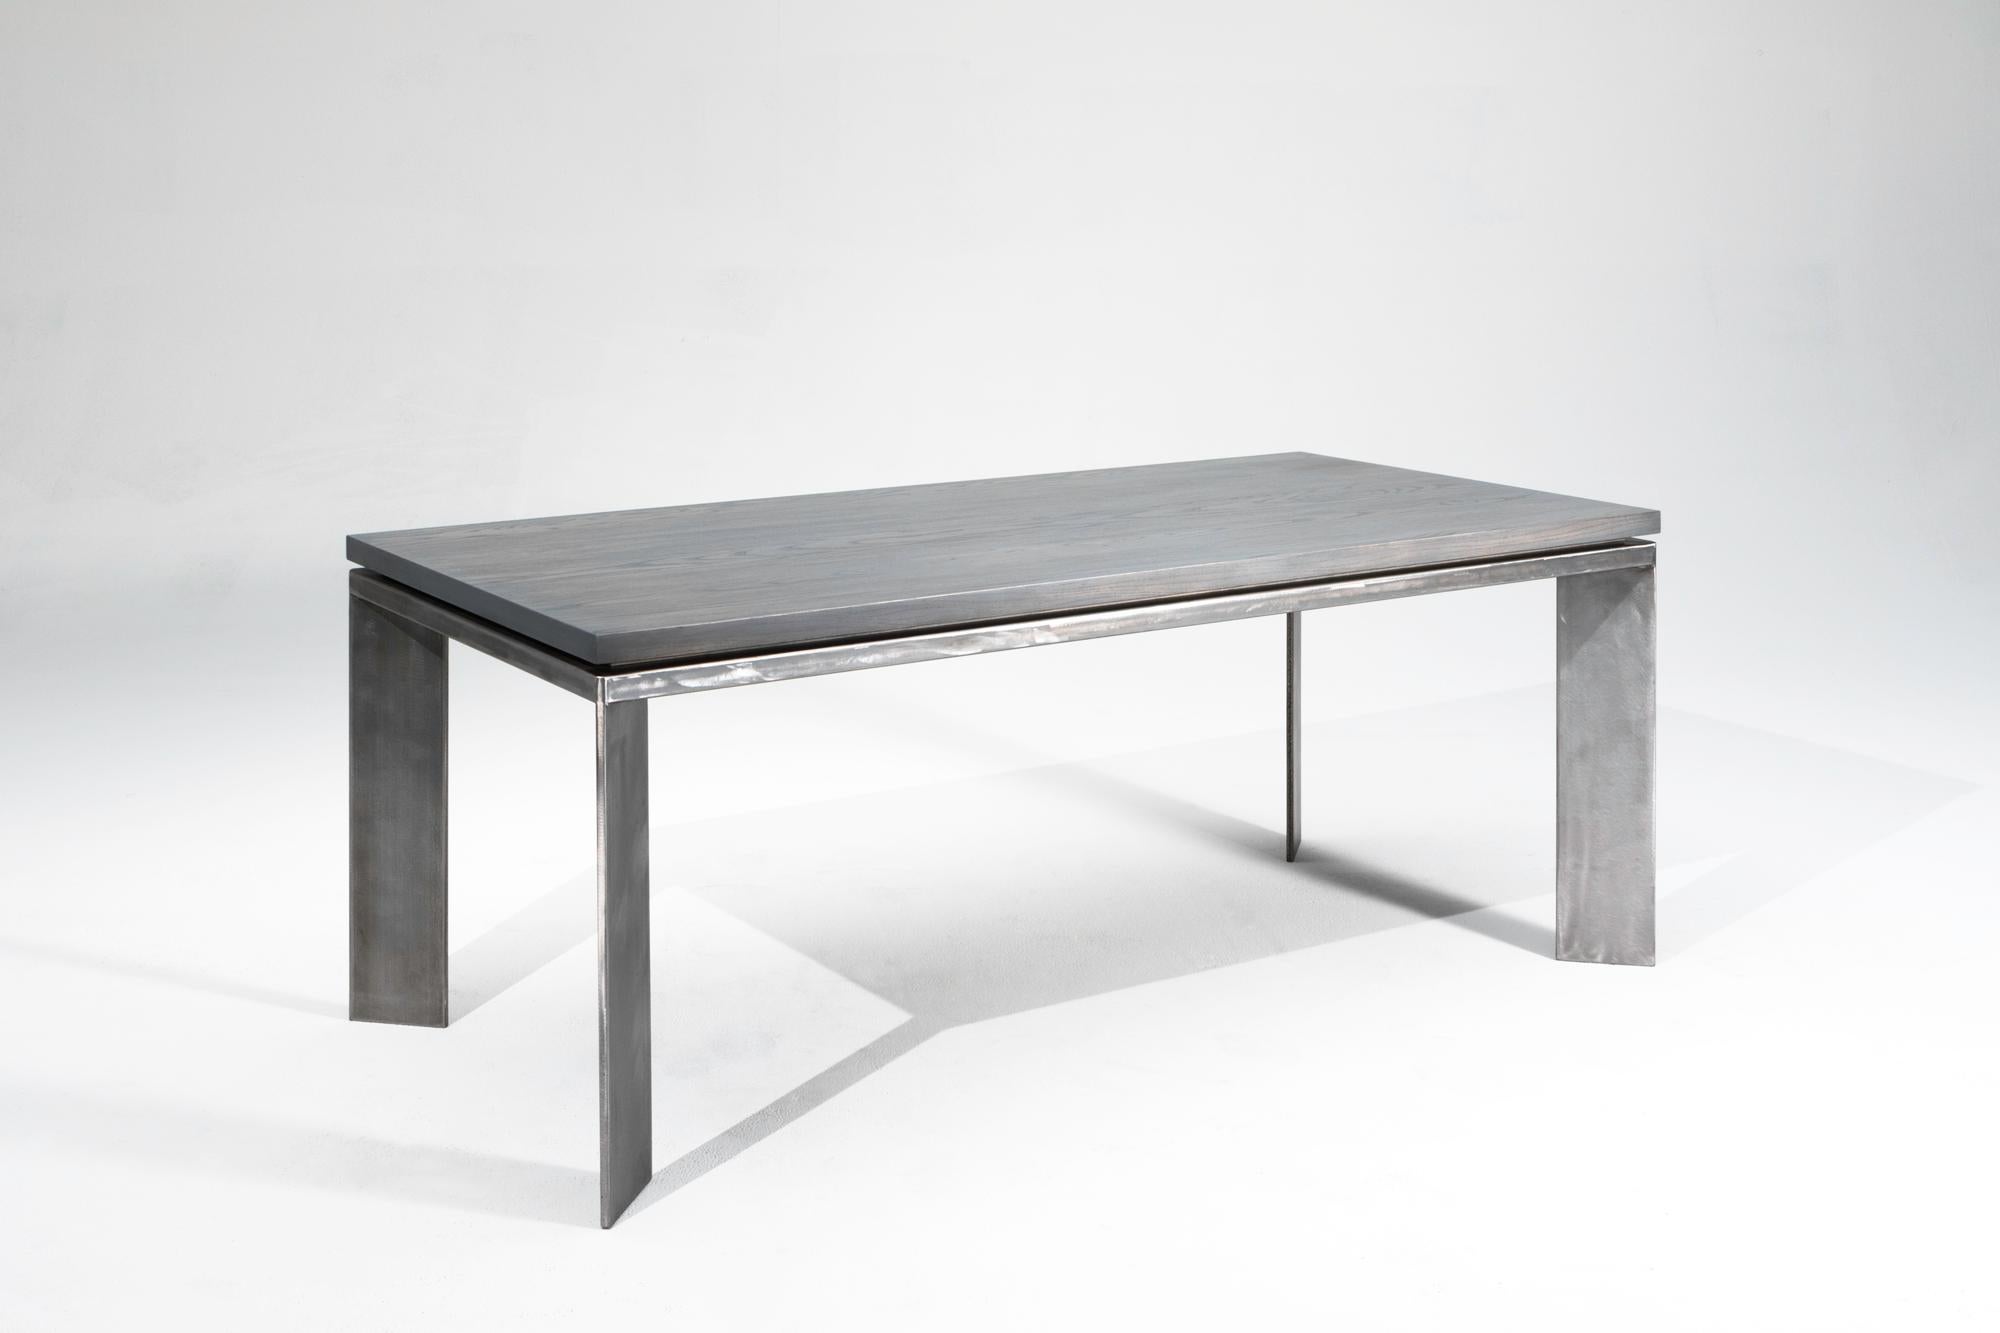 Der Charlevoix hat ein sehr klares und einfaches Design. Die Tischplatte aus massivem Eschenholz ist in Schiefergrau gehalten und wird von einem Sockel aus gebürstetem Stahl begleitet. Die massive Platte ist leicht über den Sockel angehoben, um